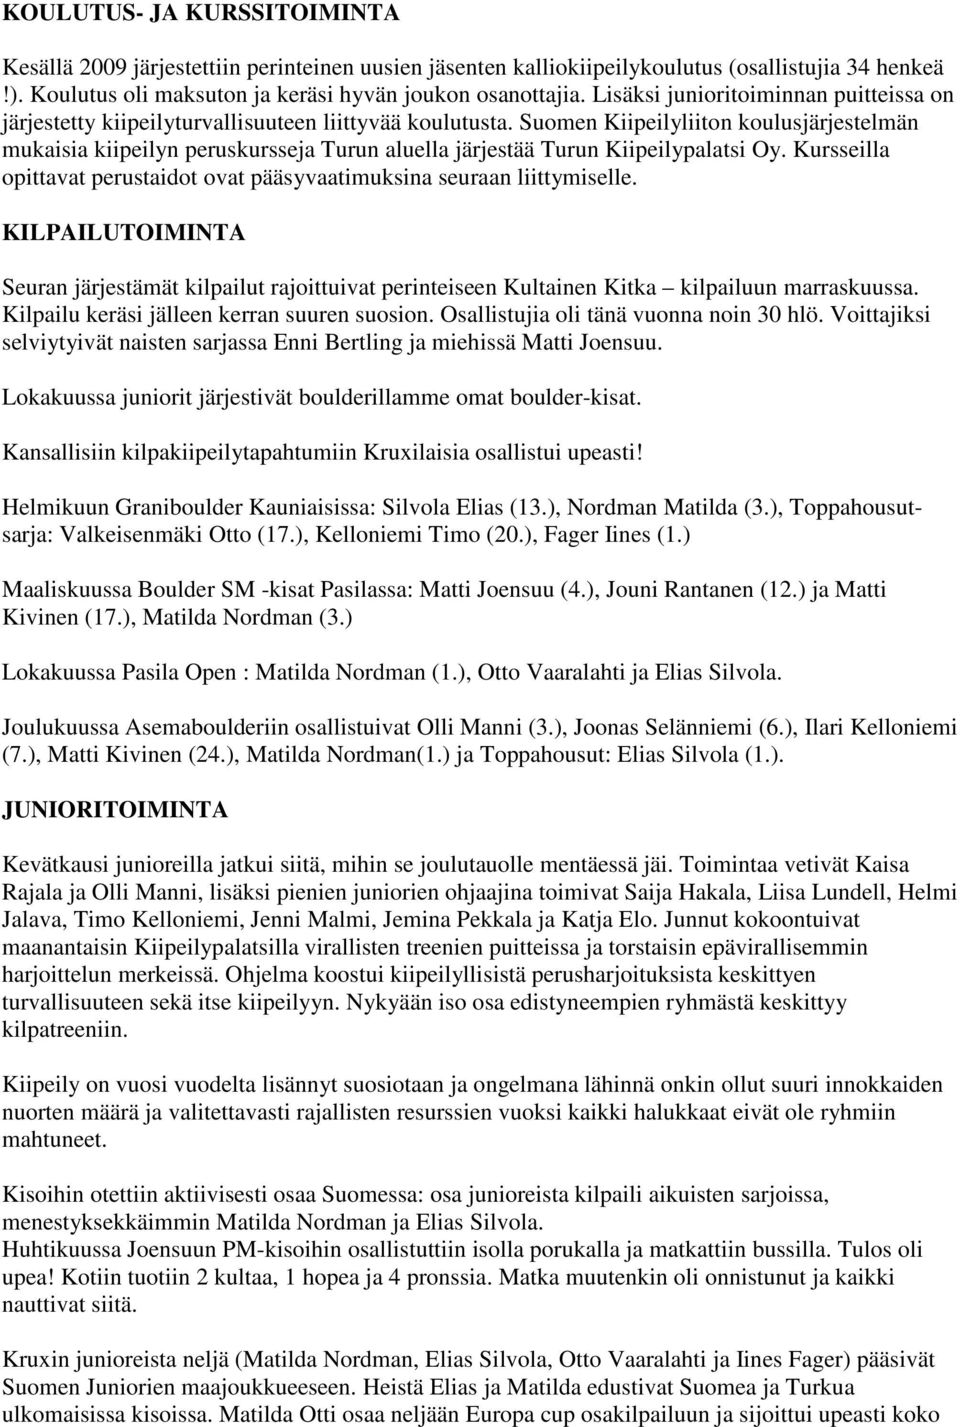 Suomen Kiipeilyliiton koulusjärjestelmän mukaisia kiipeilyn peruskursseja Turun aluella järjestää Turun Kiipeilypalatsi Oy.